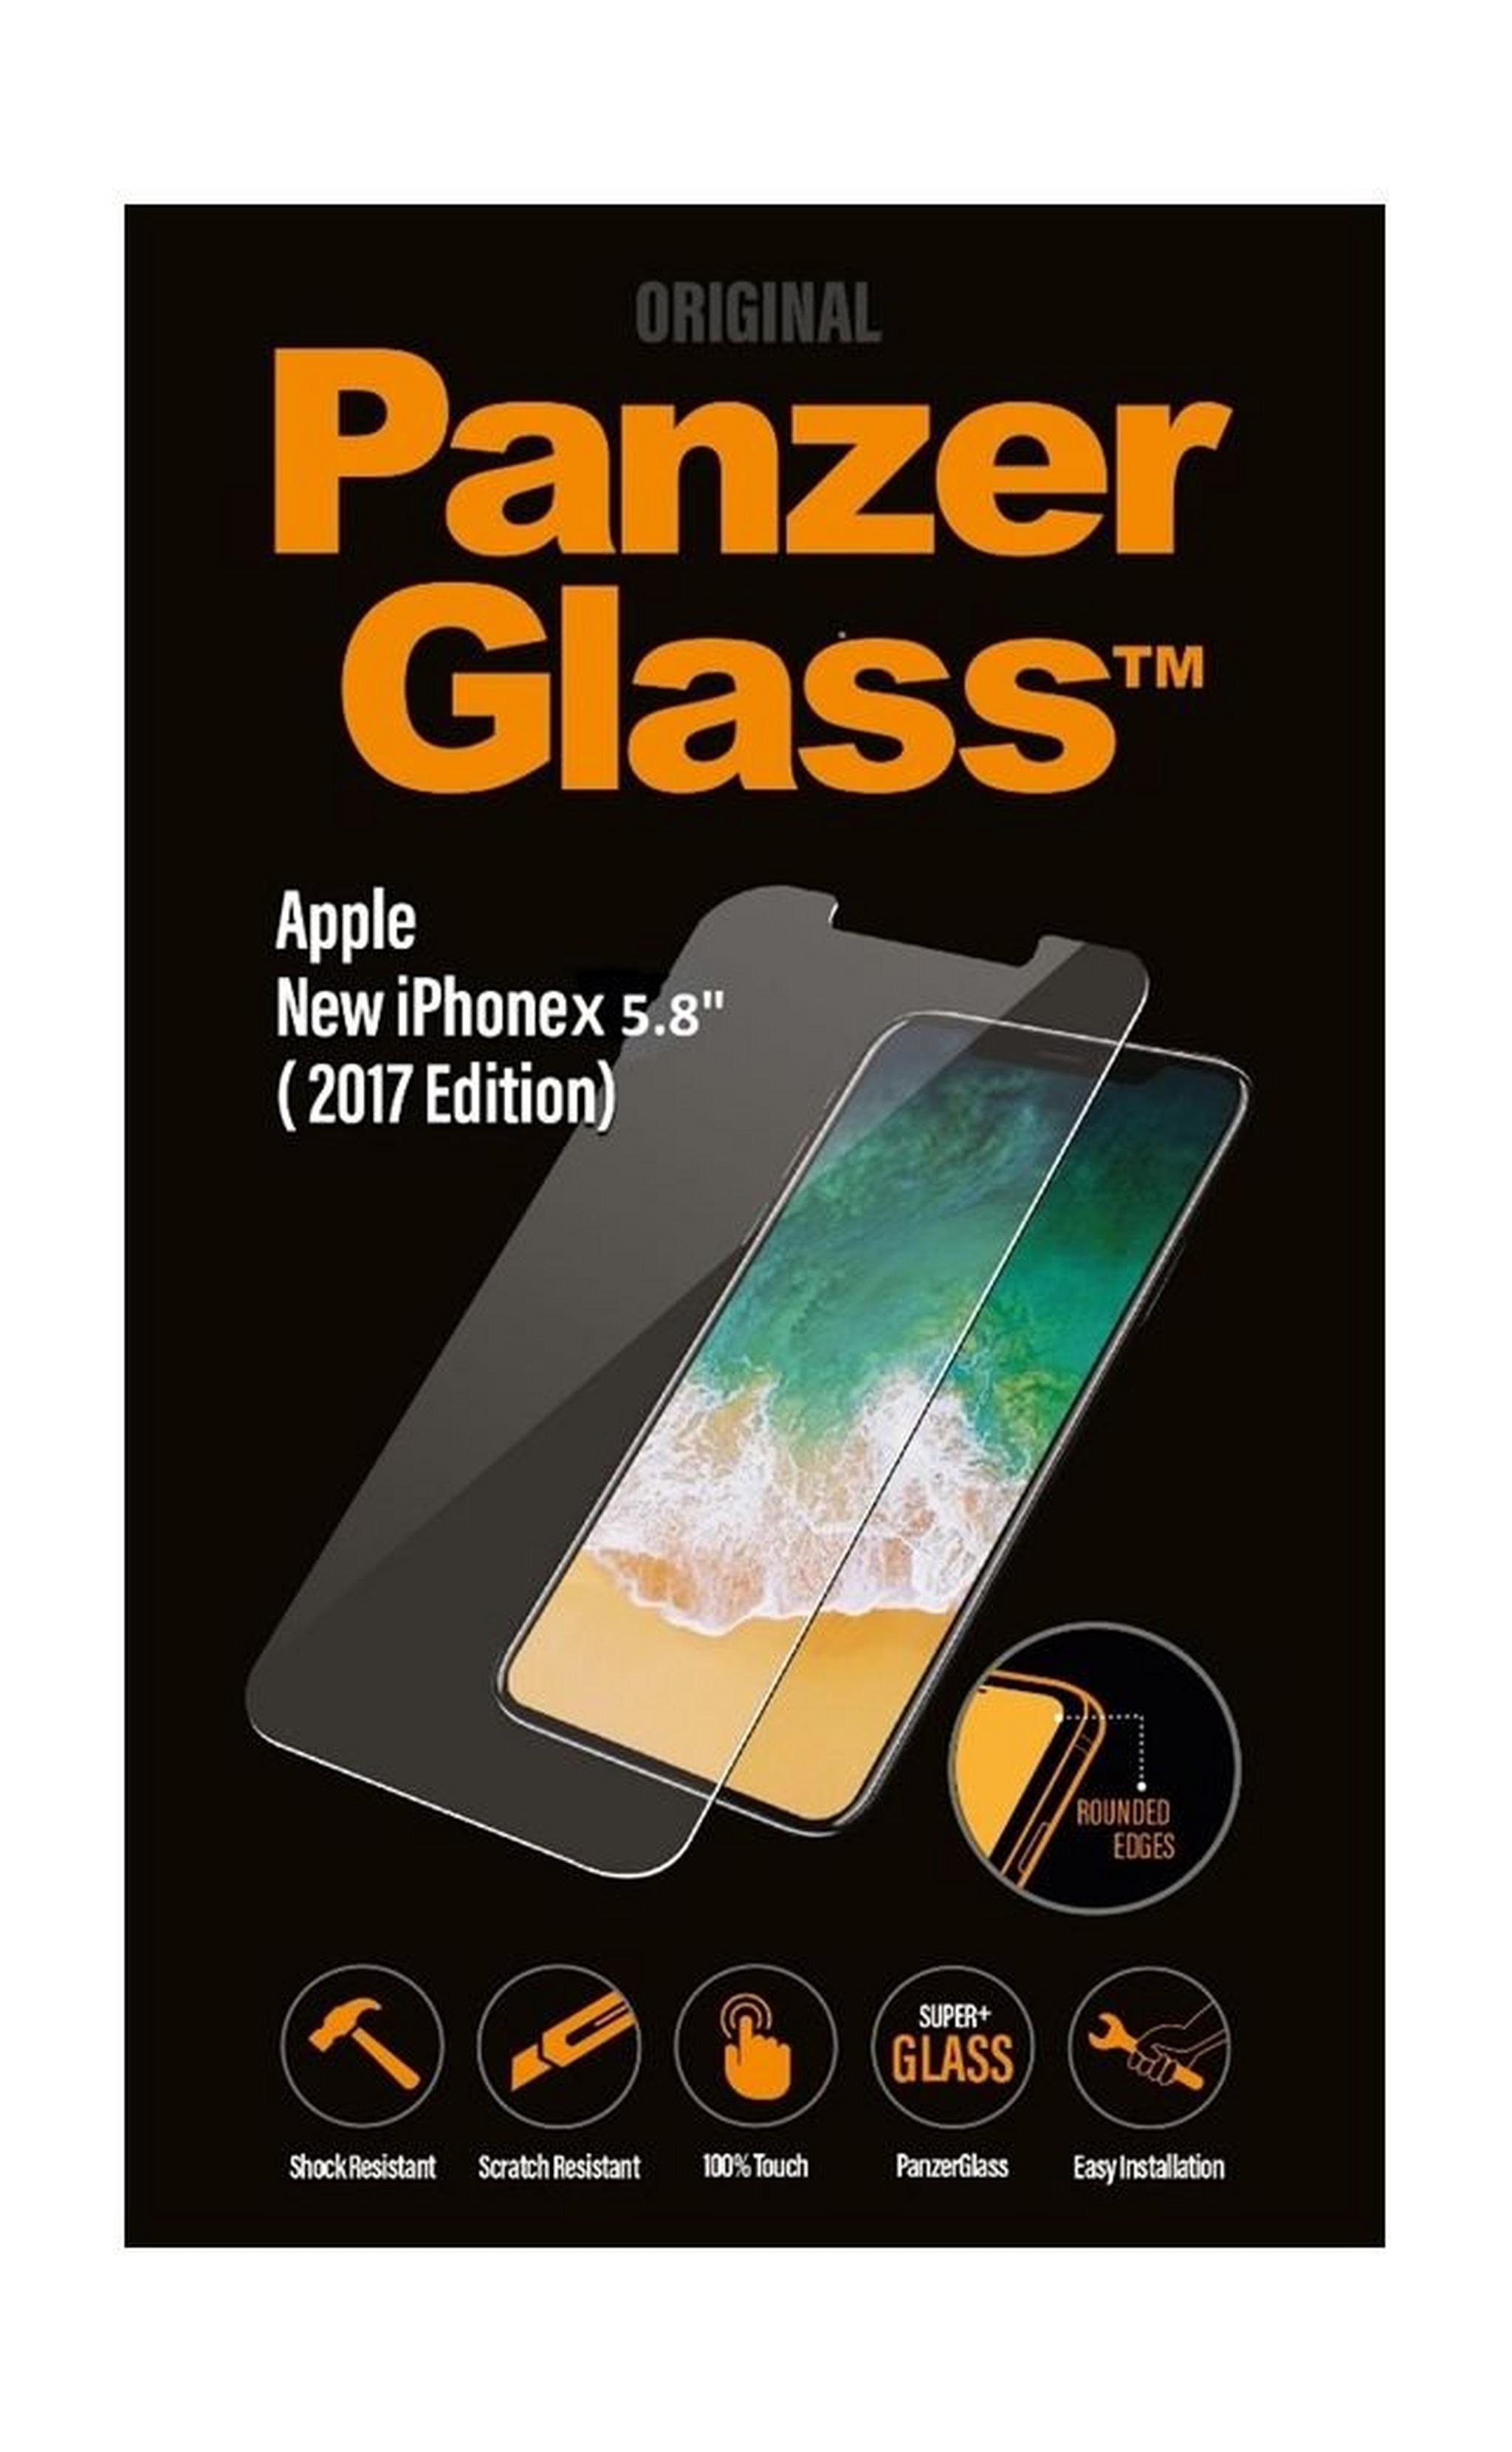 واقي الشاشة الزجاجي لهاتف أيفون إكس  من بانزر (٢٠١٧)